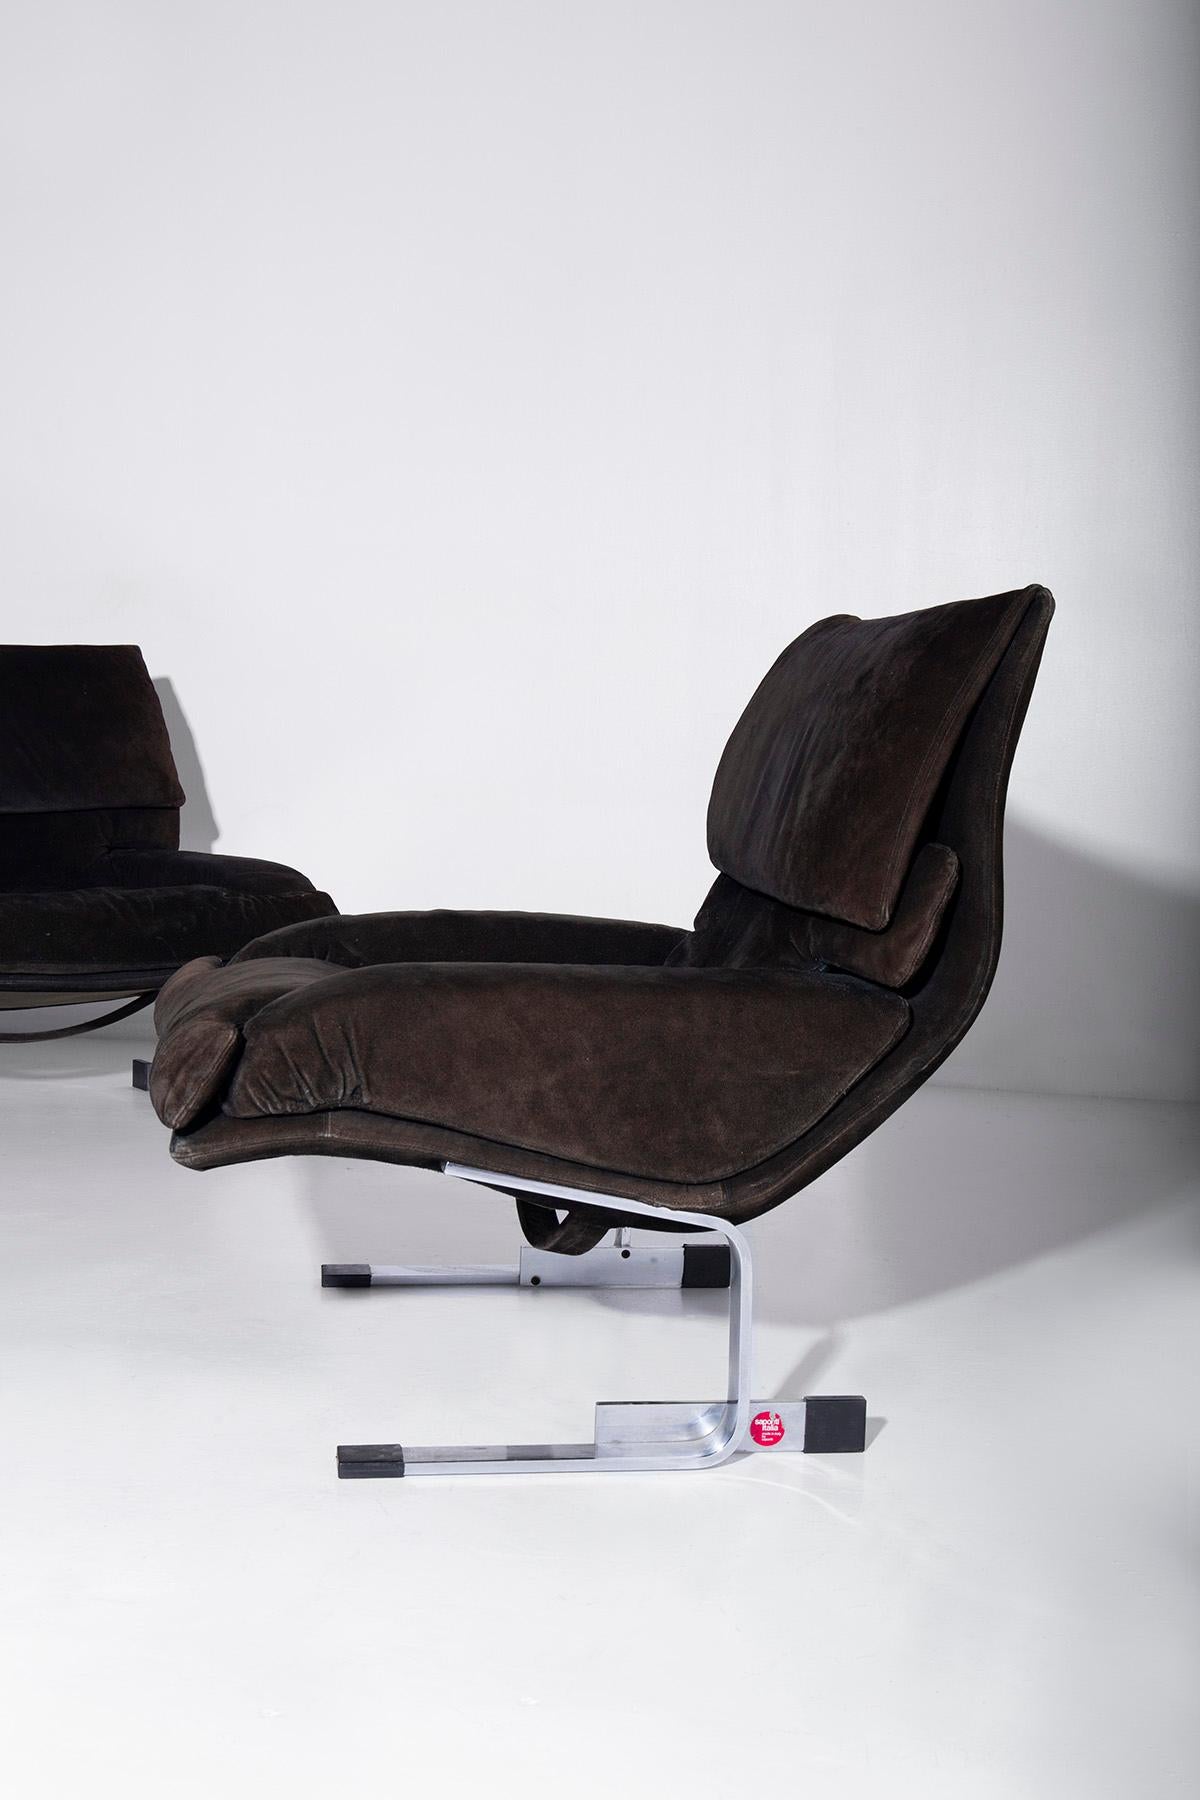 Late 20th Century Giovanni Offredi Saporiti Armchairs Model Onda, Label For Sale